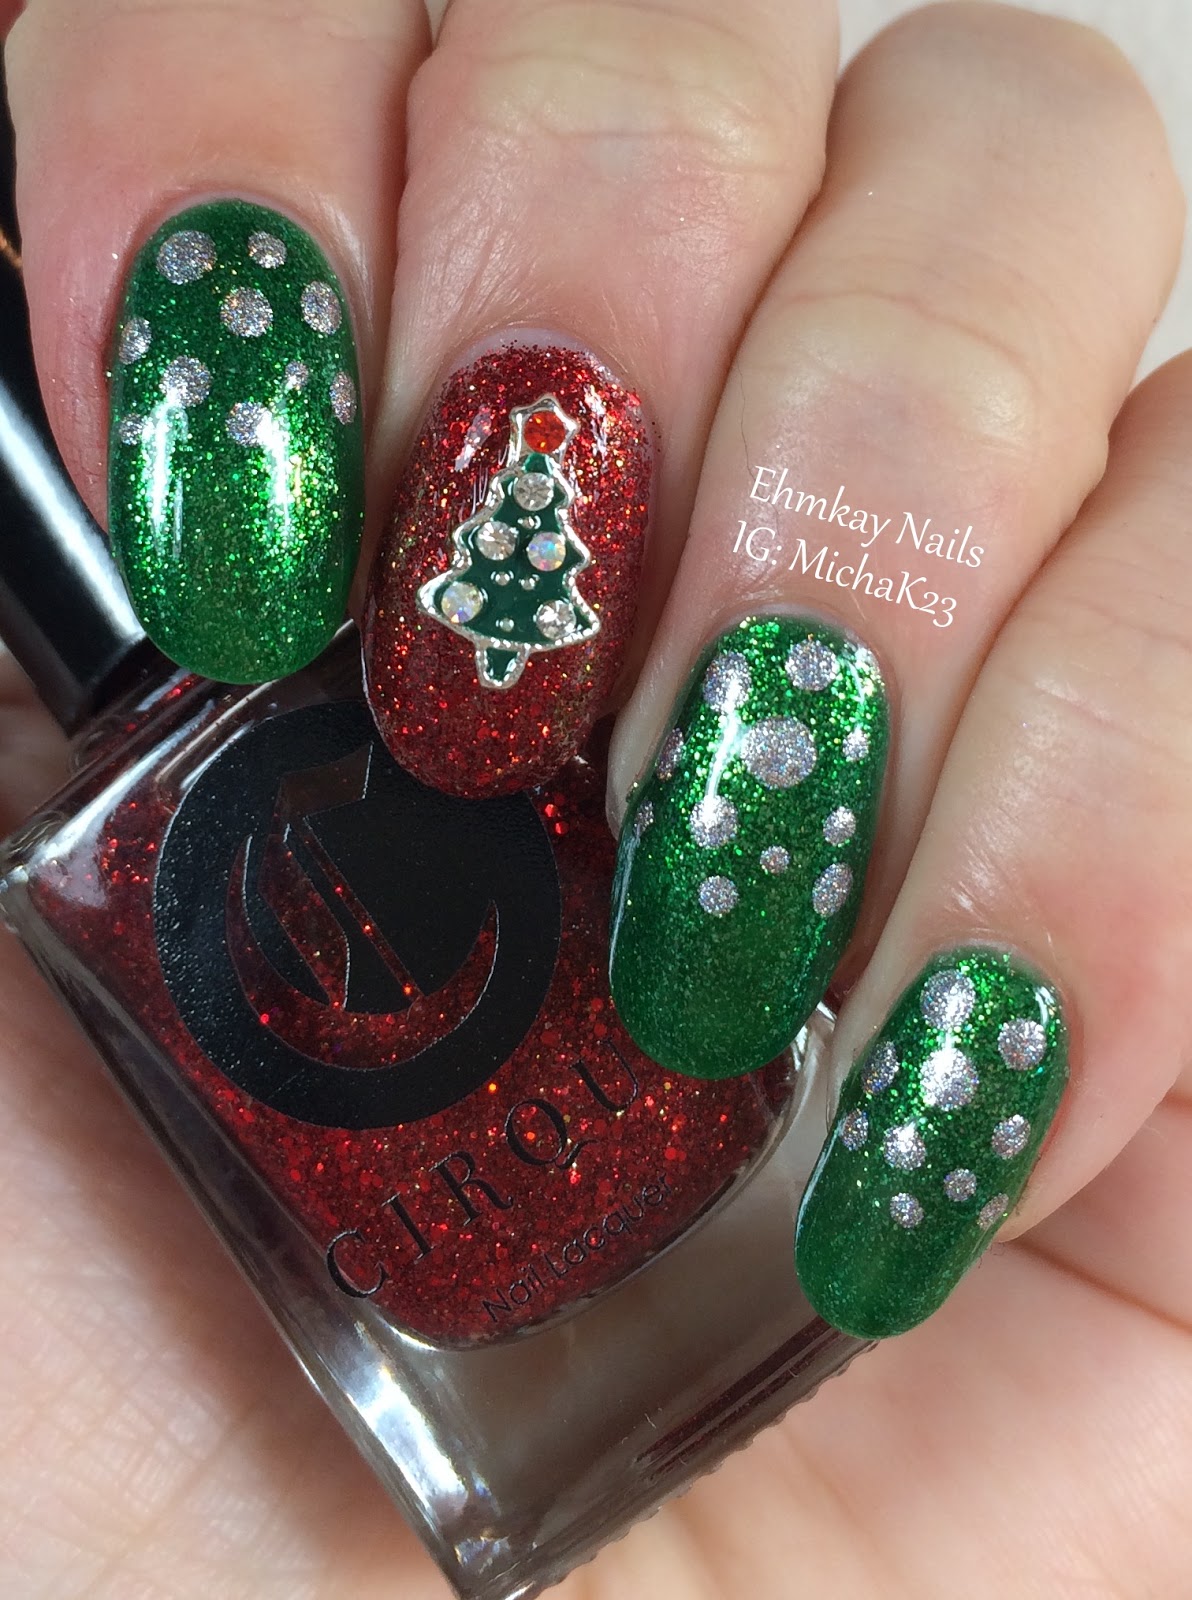 ehmkay nails: Christmas Tree Nail Jewelry and Easy Festive Nail Art